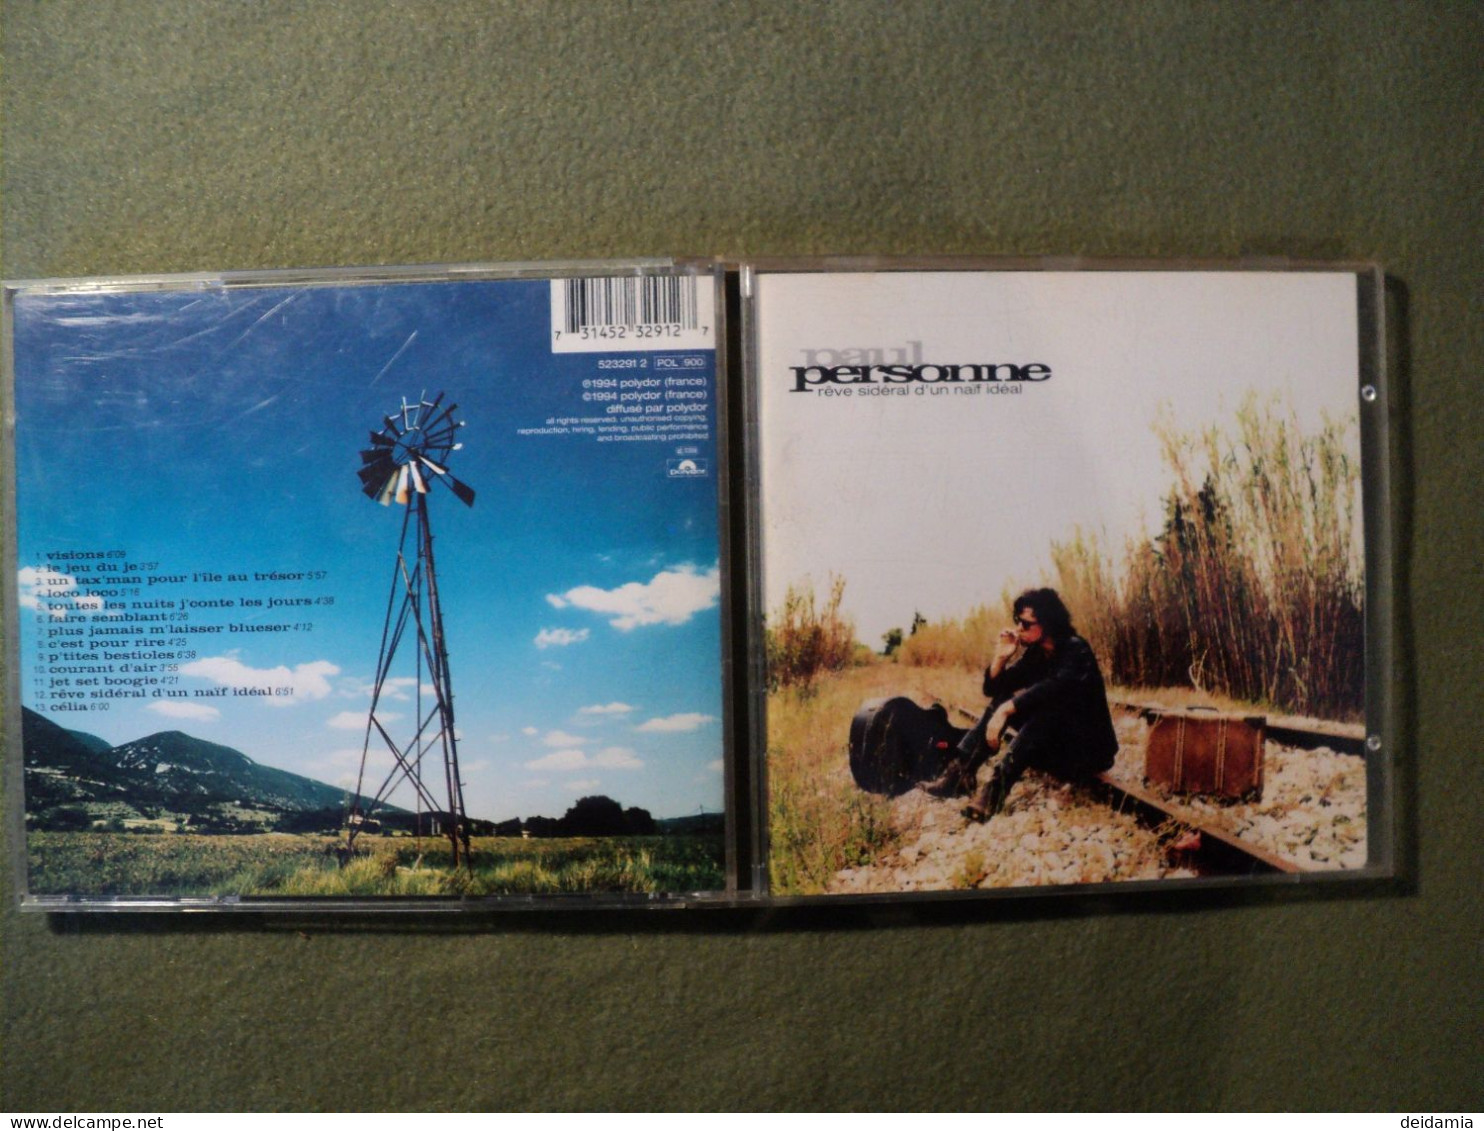 PAUL PERSONNE. CD 13 TITRES DE 1994. POLYDOR 523291 2 VISIONS / LE JEU DU JEU / UN TAX MAN POUR L ILE AU TRESOR / LOCO L - Other - French Music